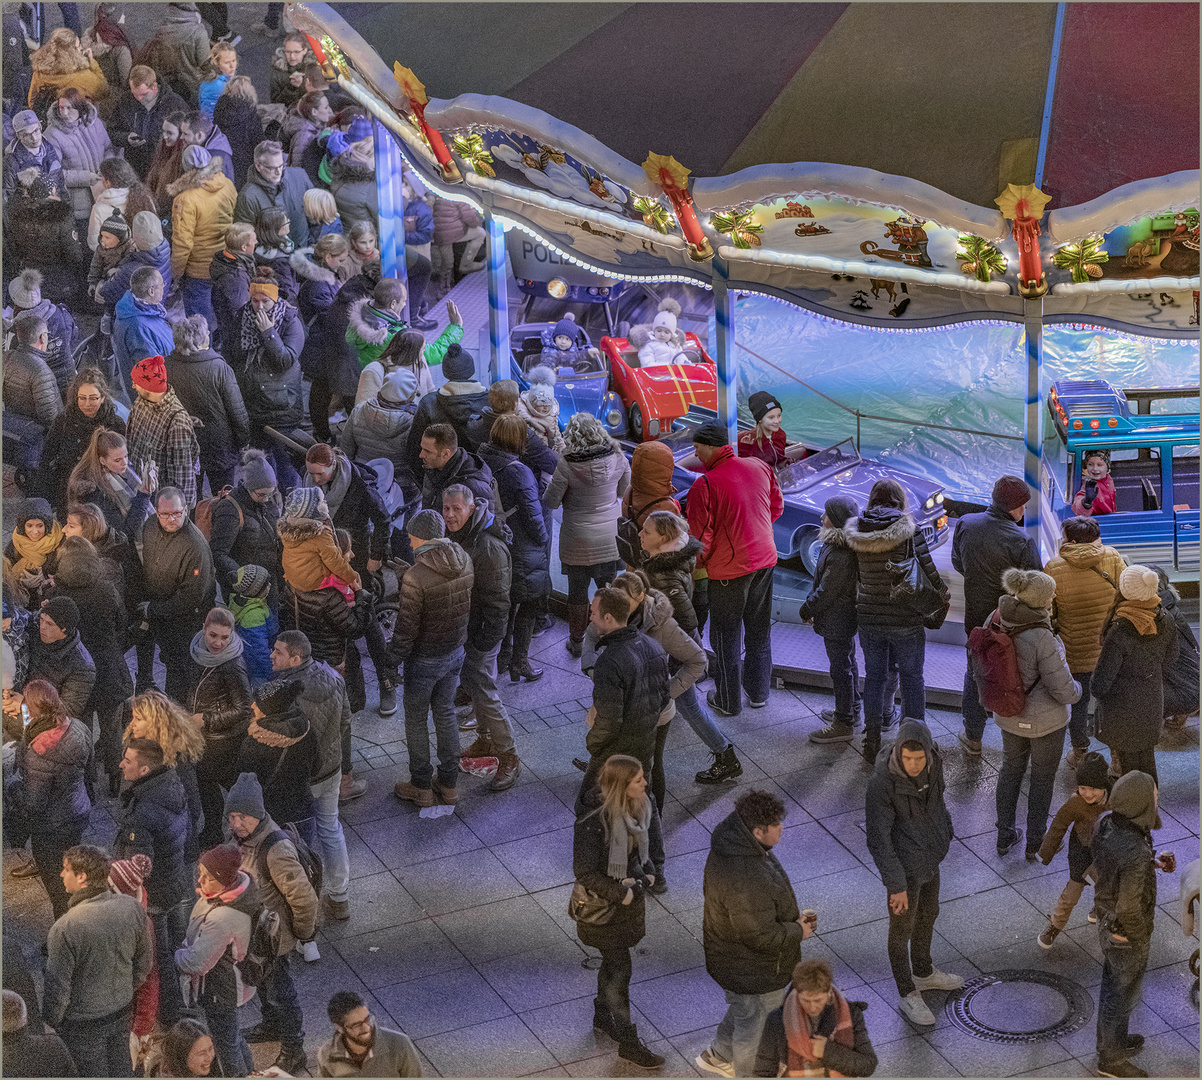 Ulm - Weihnachtsmarkt 2019 - "Abendstimmung am Karussell"